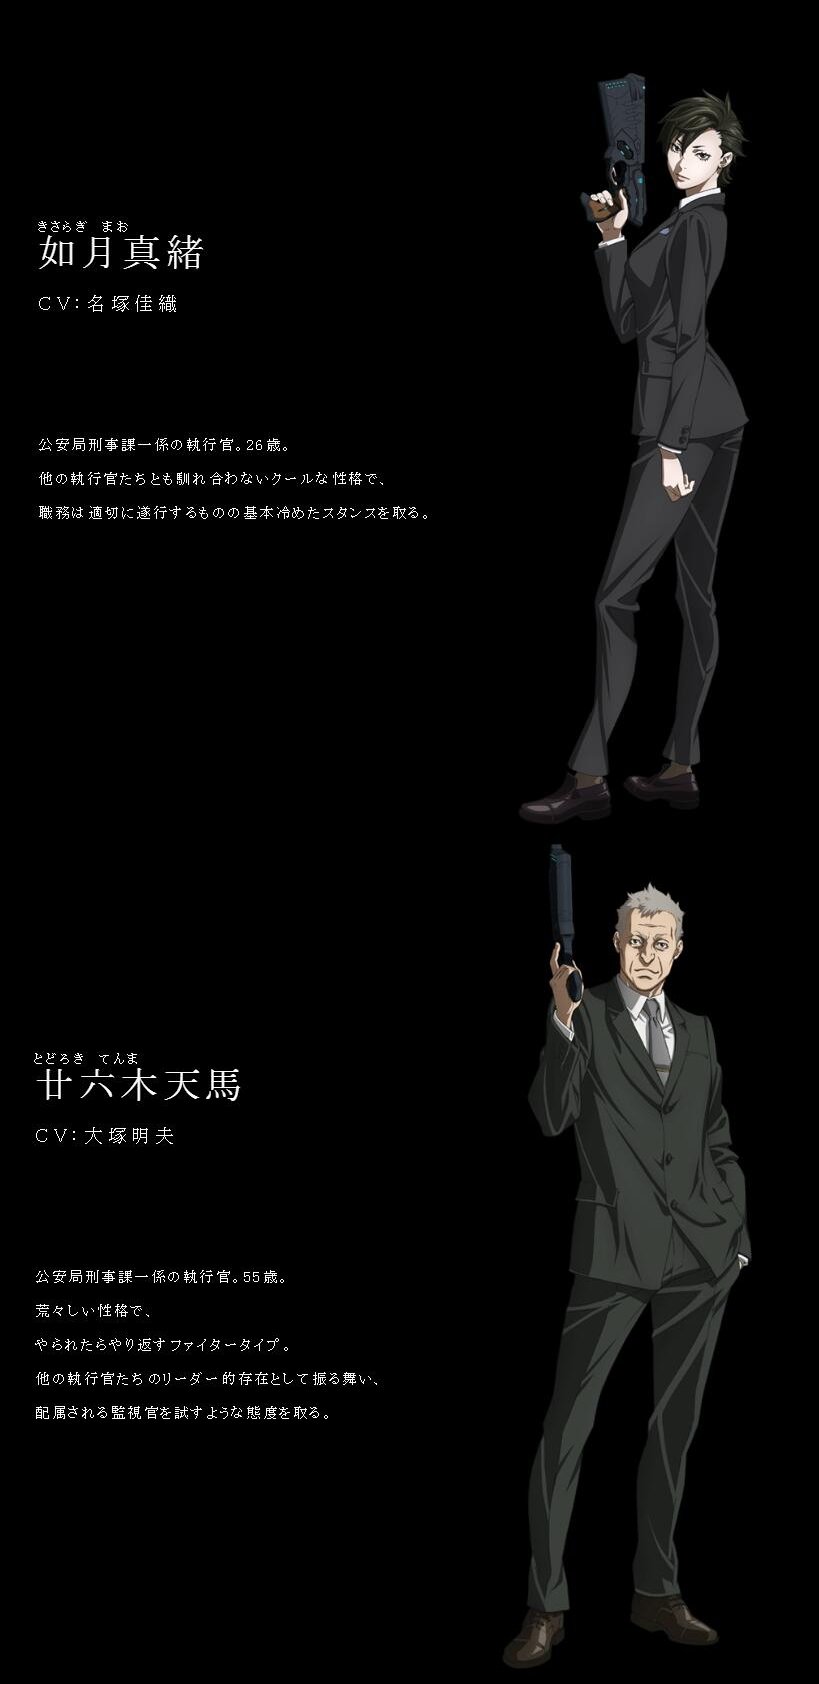 三轮士郎 Psycho Pass 第3季角色原案协力 如月 大神